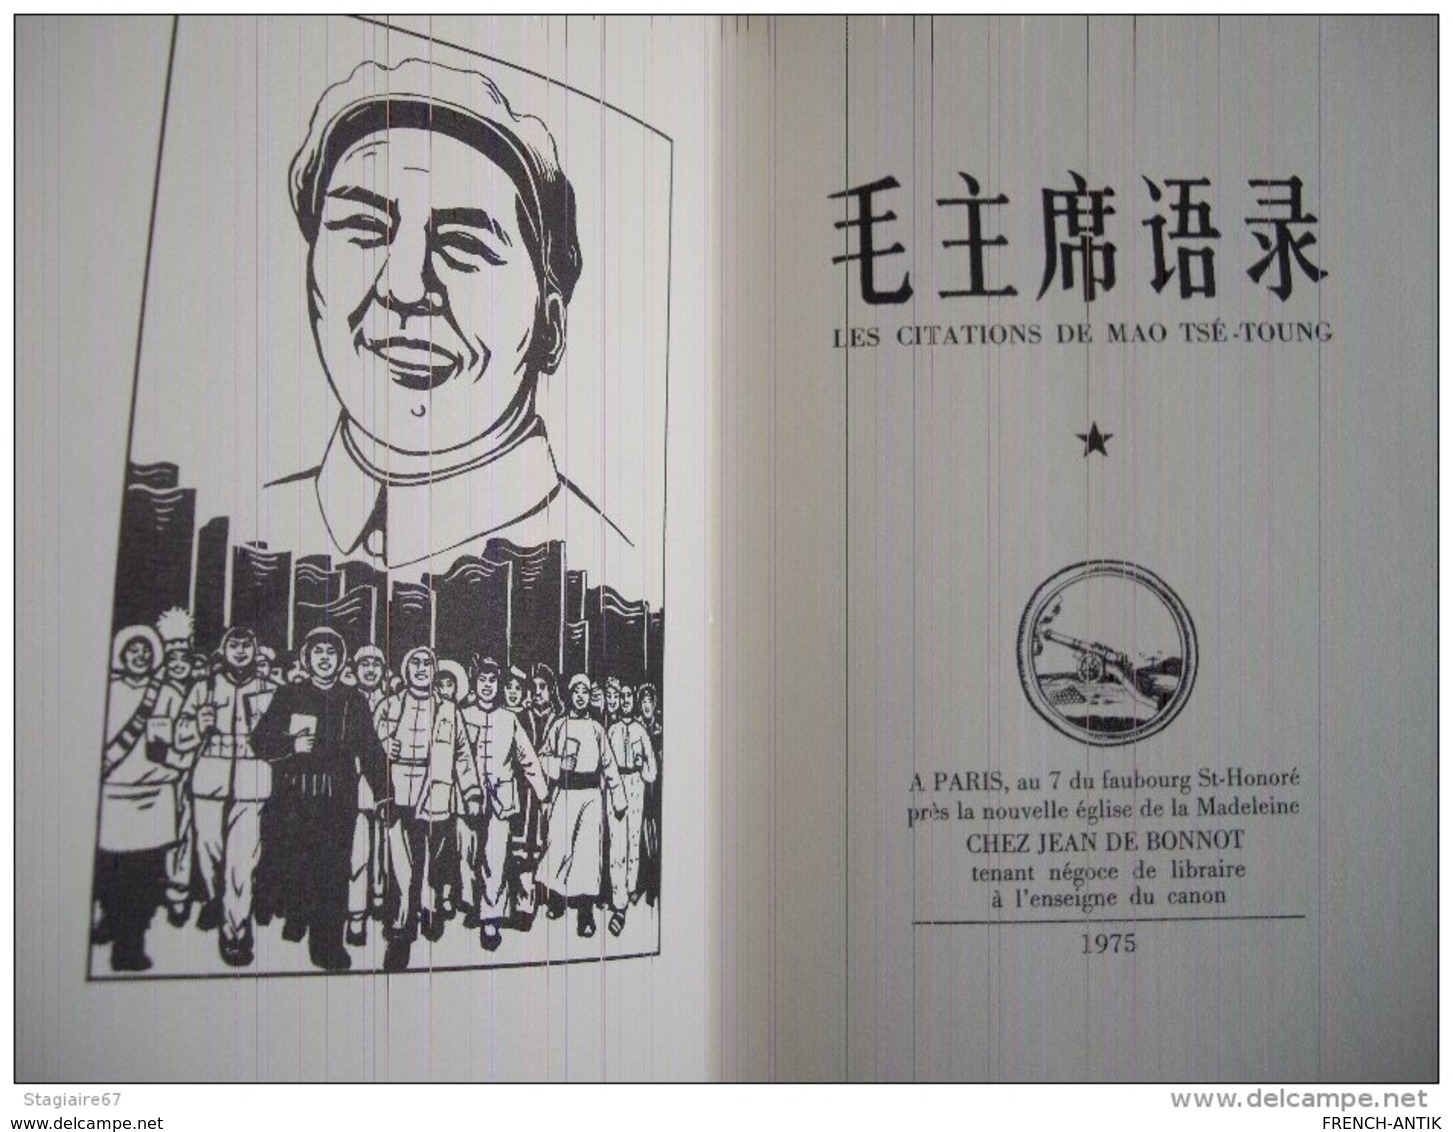 LE LIVRE ROUGE DE MAO TSE TOUNG EN EDITION DE BIBLIOPHILE CHINOIS FRANCAIS - Non Classificati